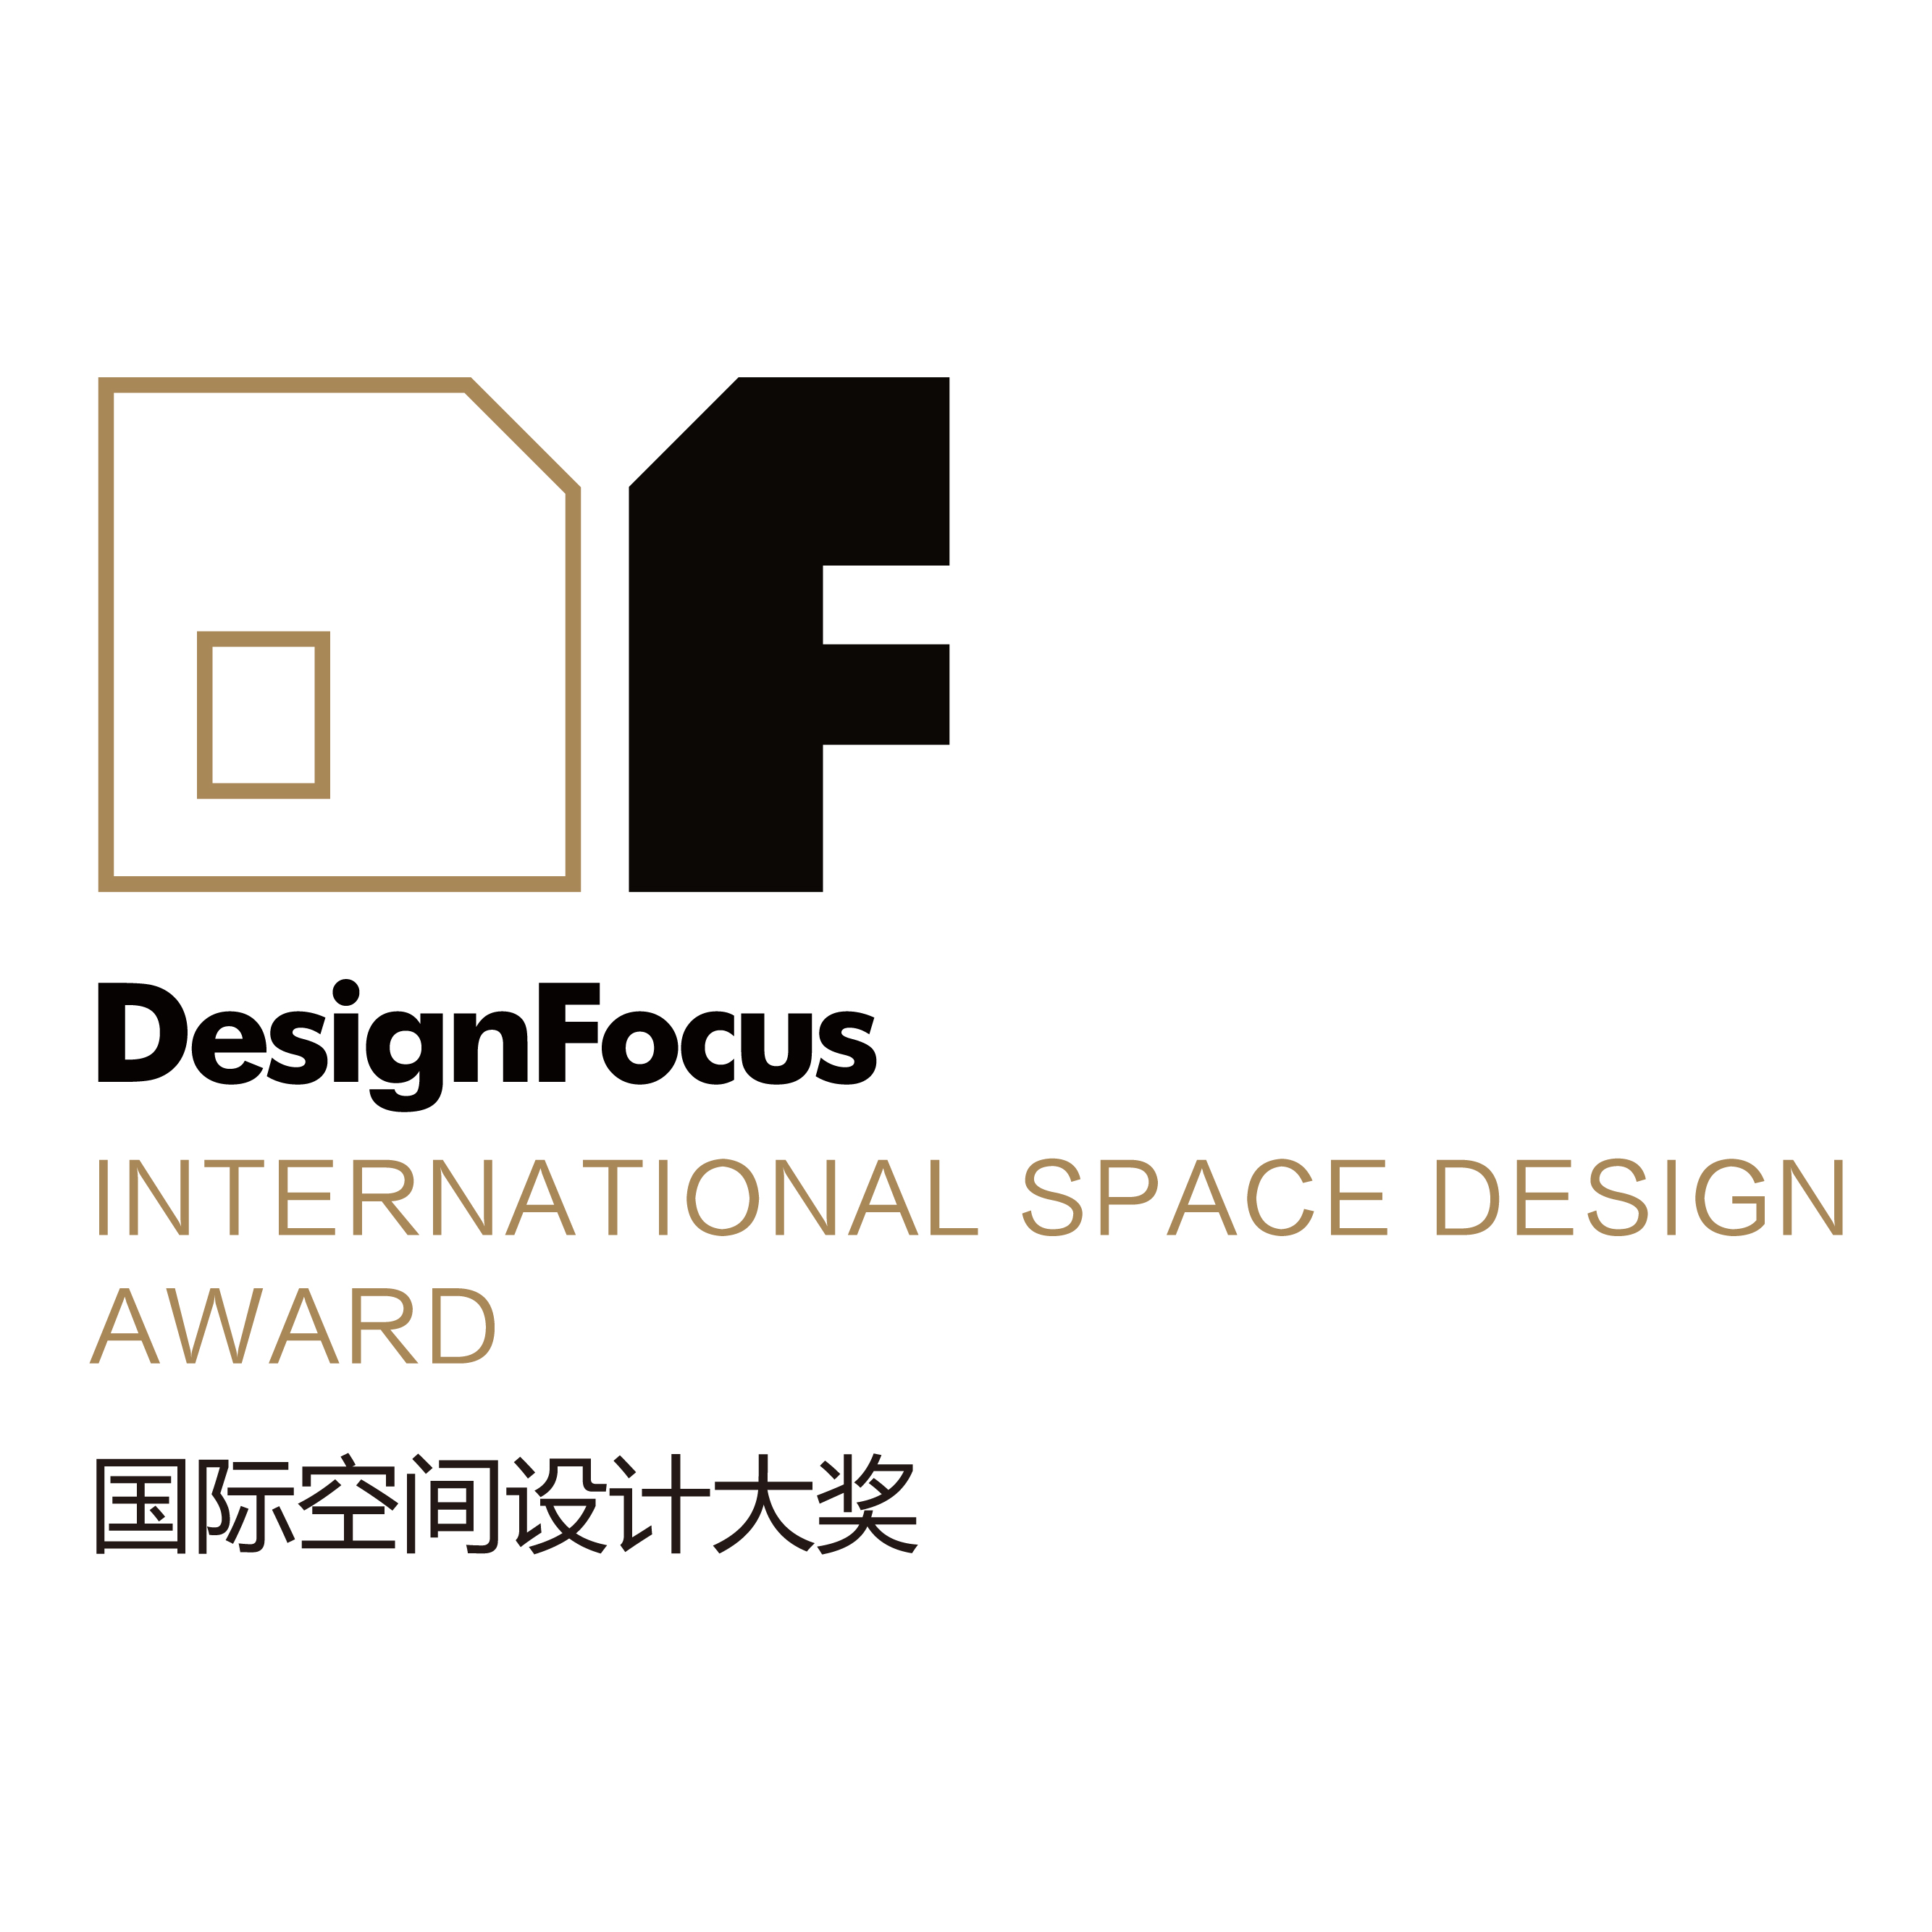 中国-Design Focus国际空间设计大奖